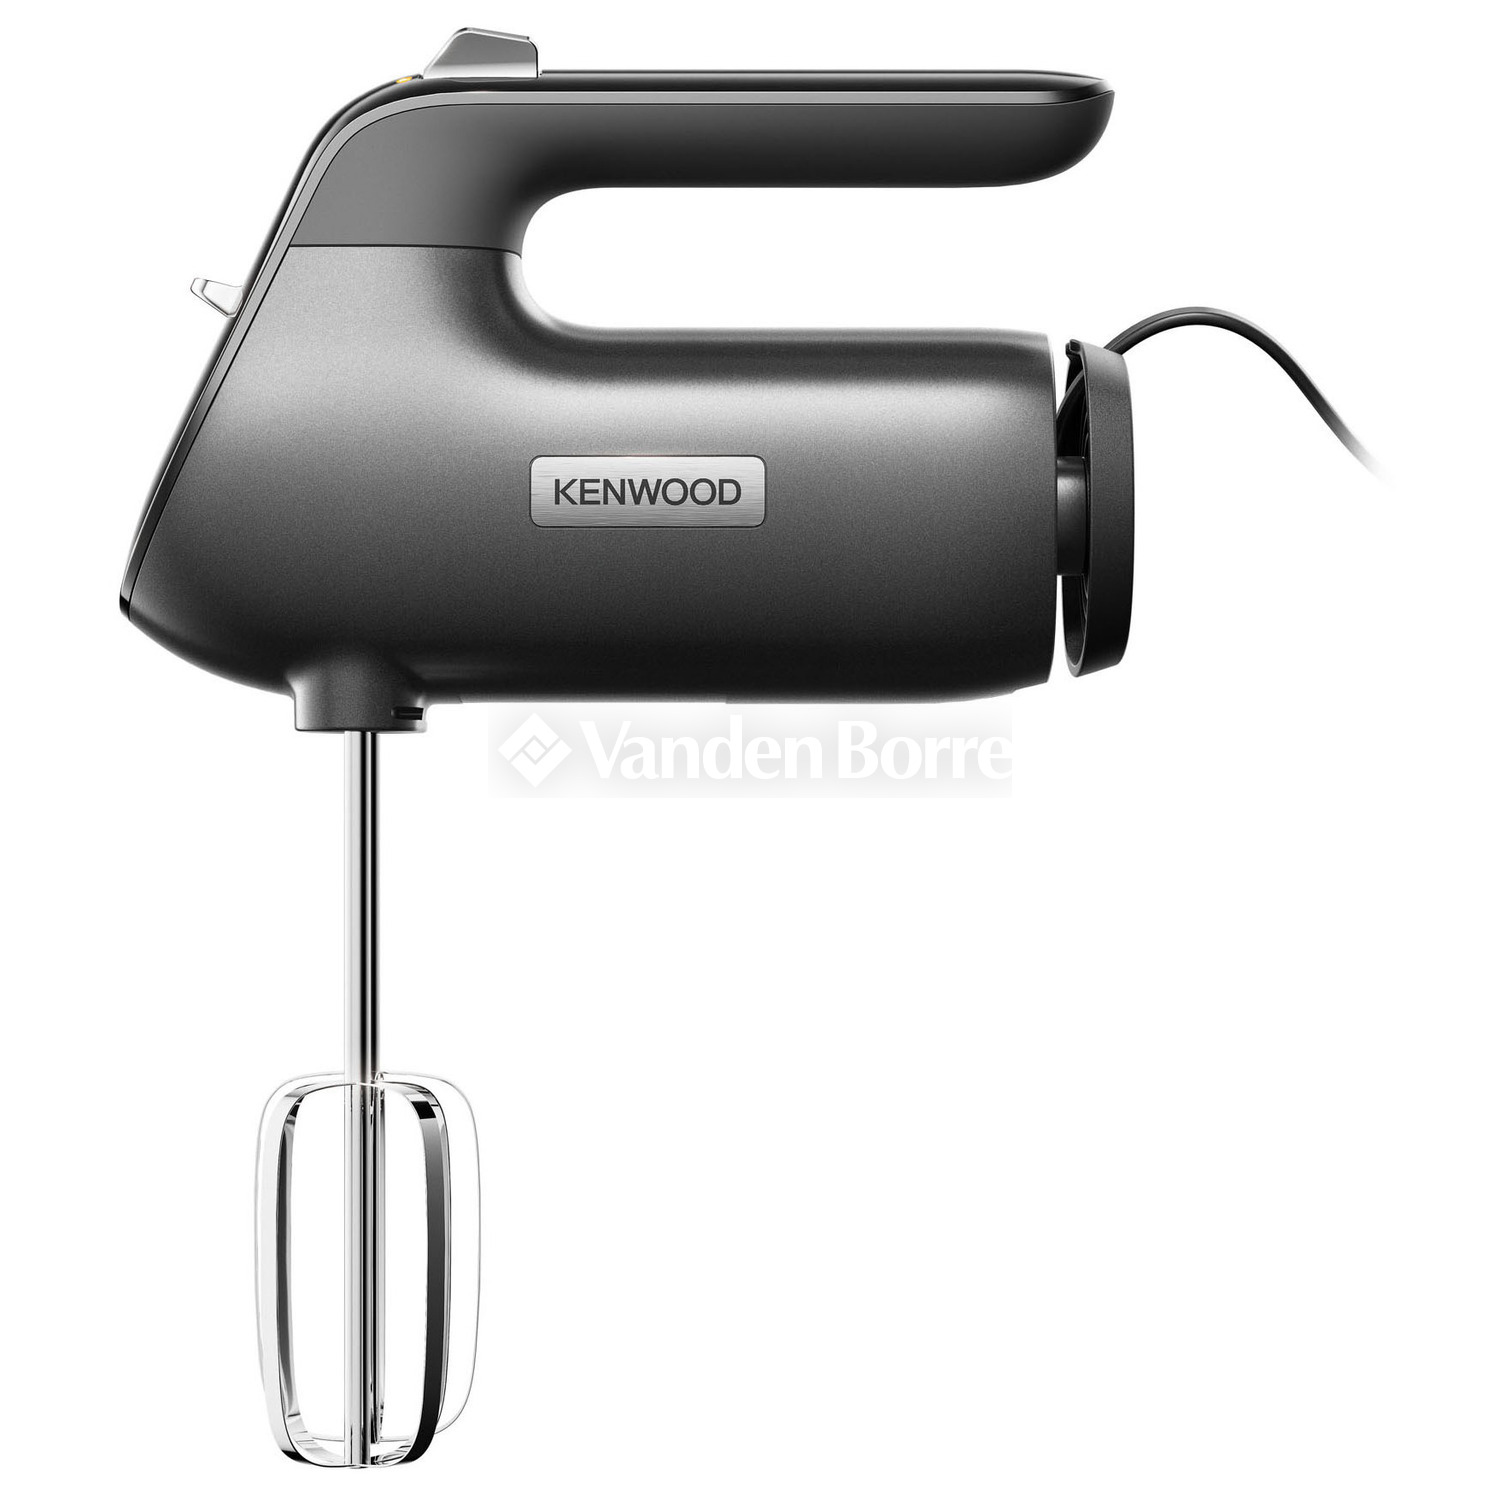 KENWOOD MIXER HMP50.000BK | Vanden Borre